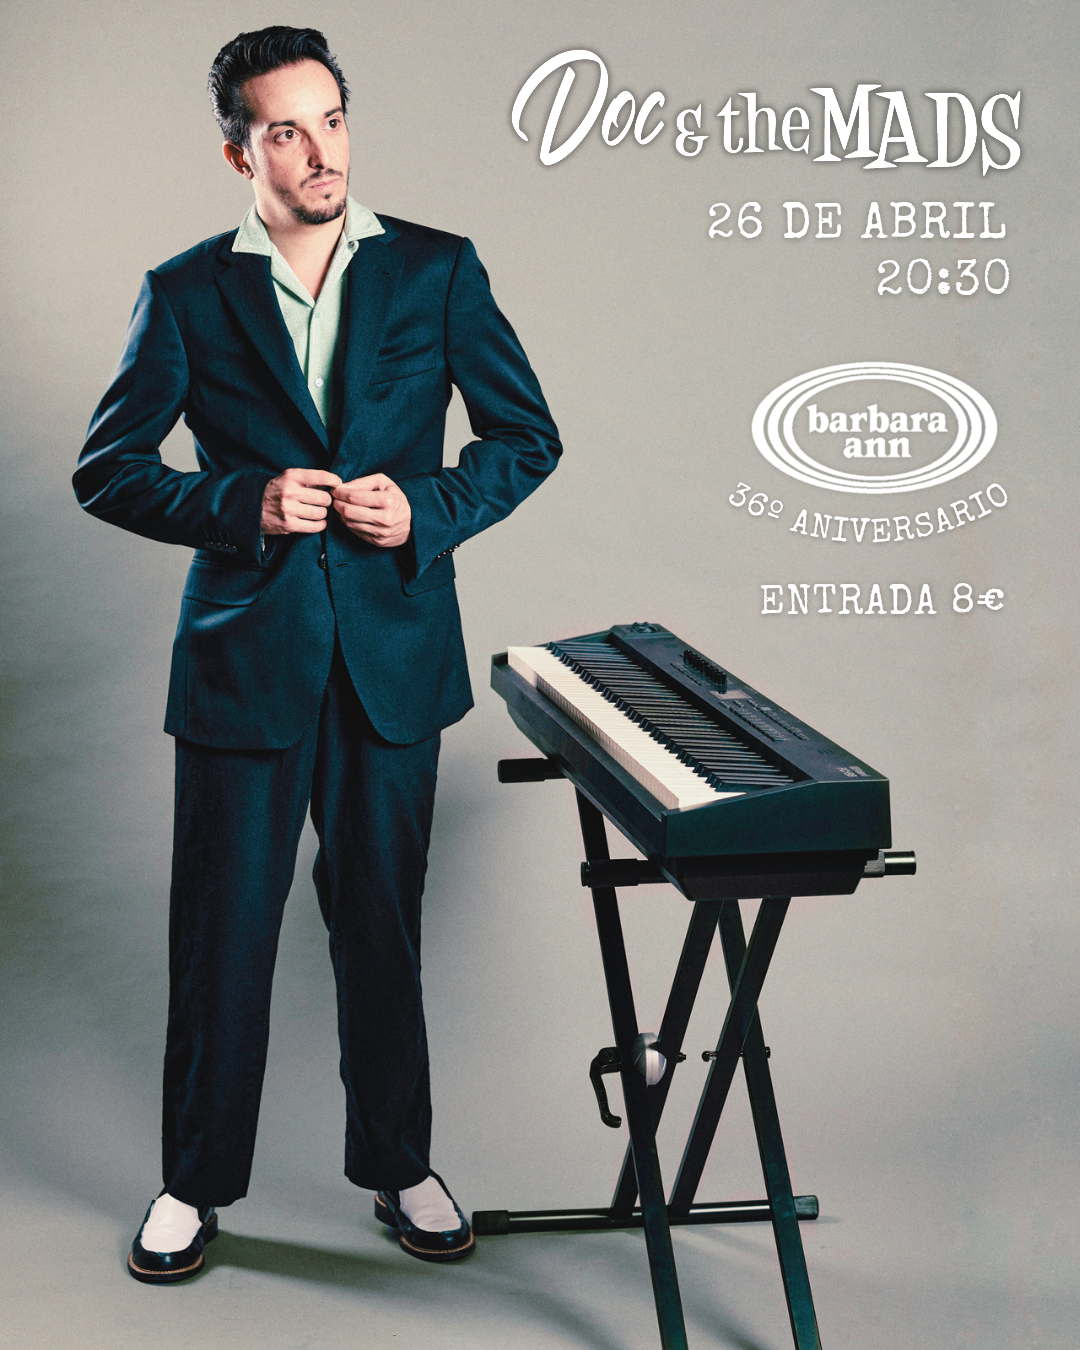 Doc and the Mads | 36e aniversari del Barbara Ann  (Doc and the Mads )  a Barcelona  - concert a Barcelona - concerts catalunya - agenda cap de setmana - que fer aquest cap de setmana - que fer avui